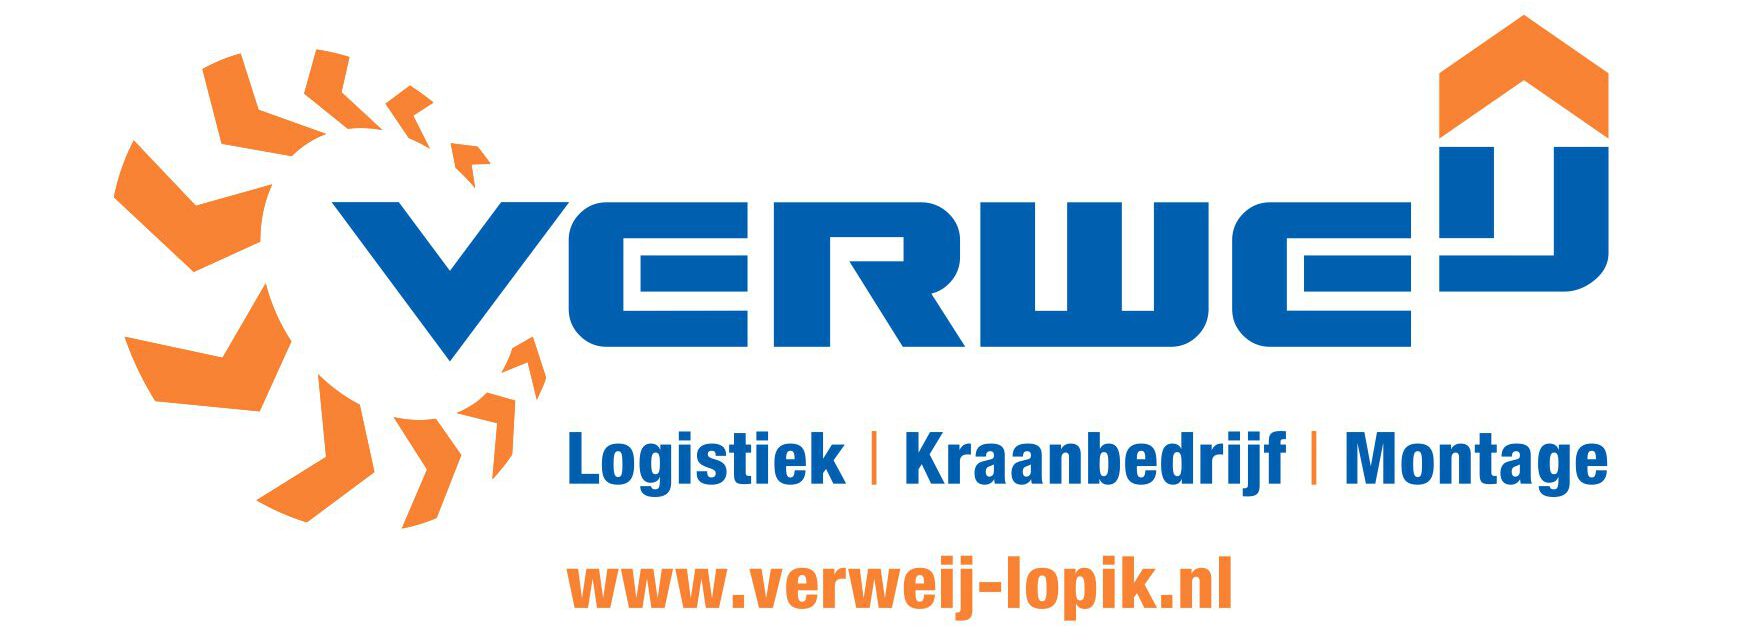 VERWEIJ-logo op wit+www_page-0001